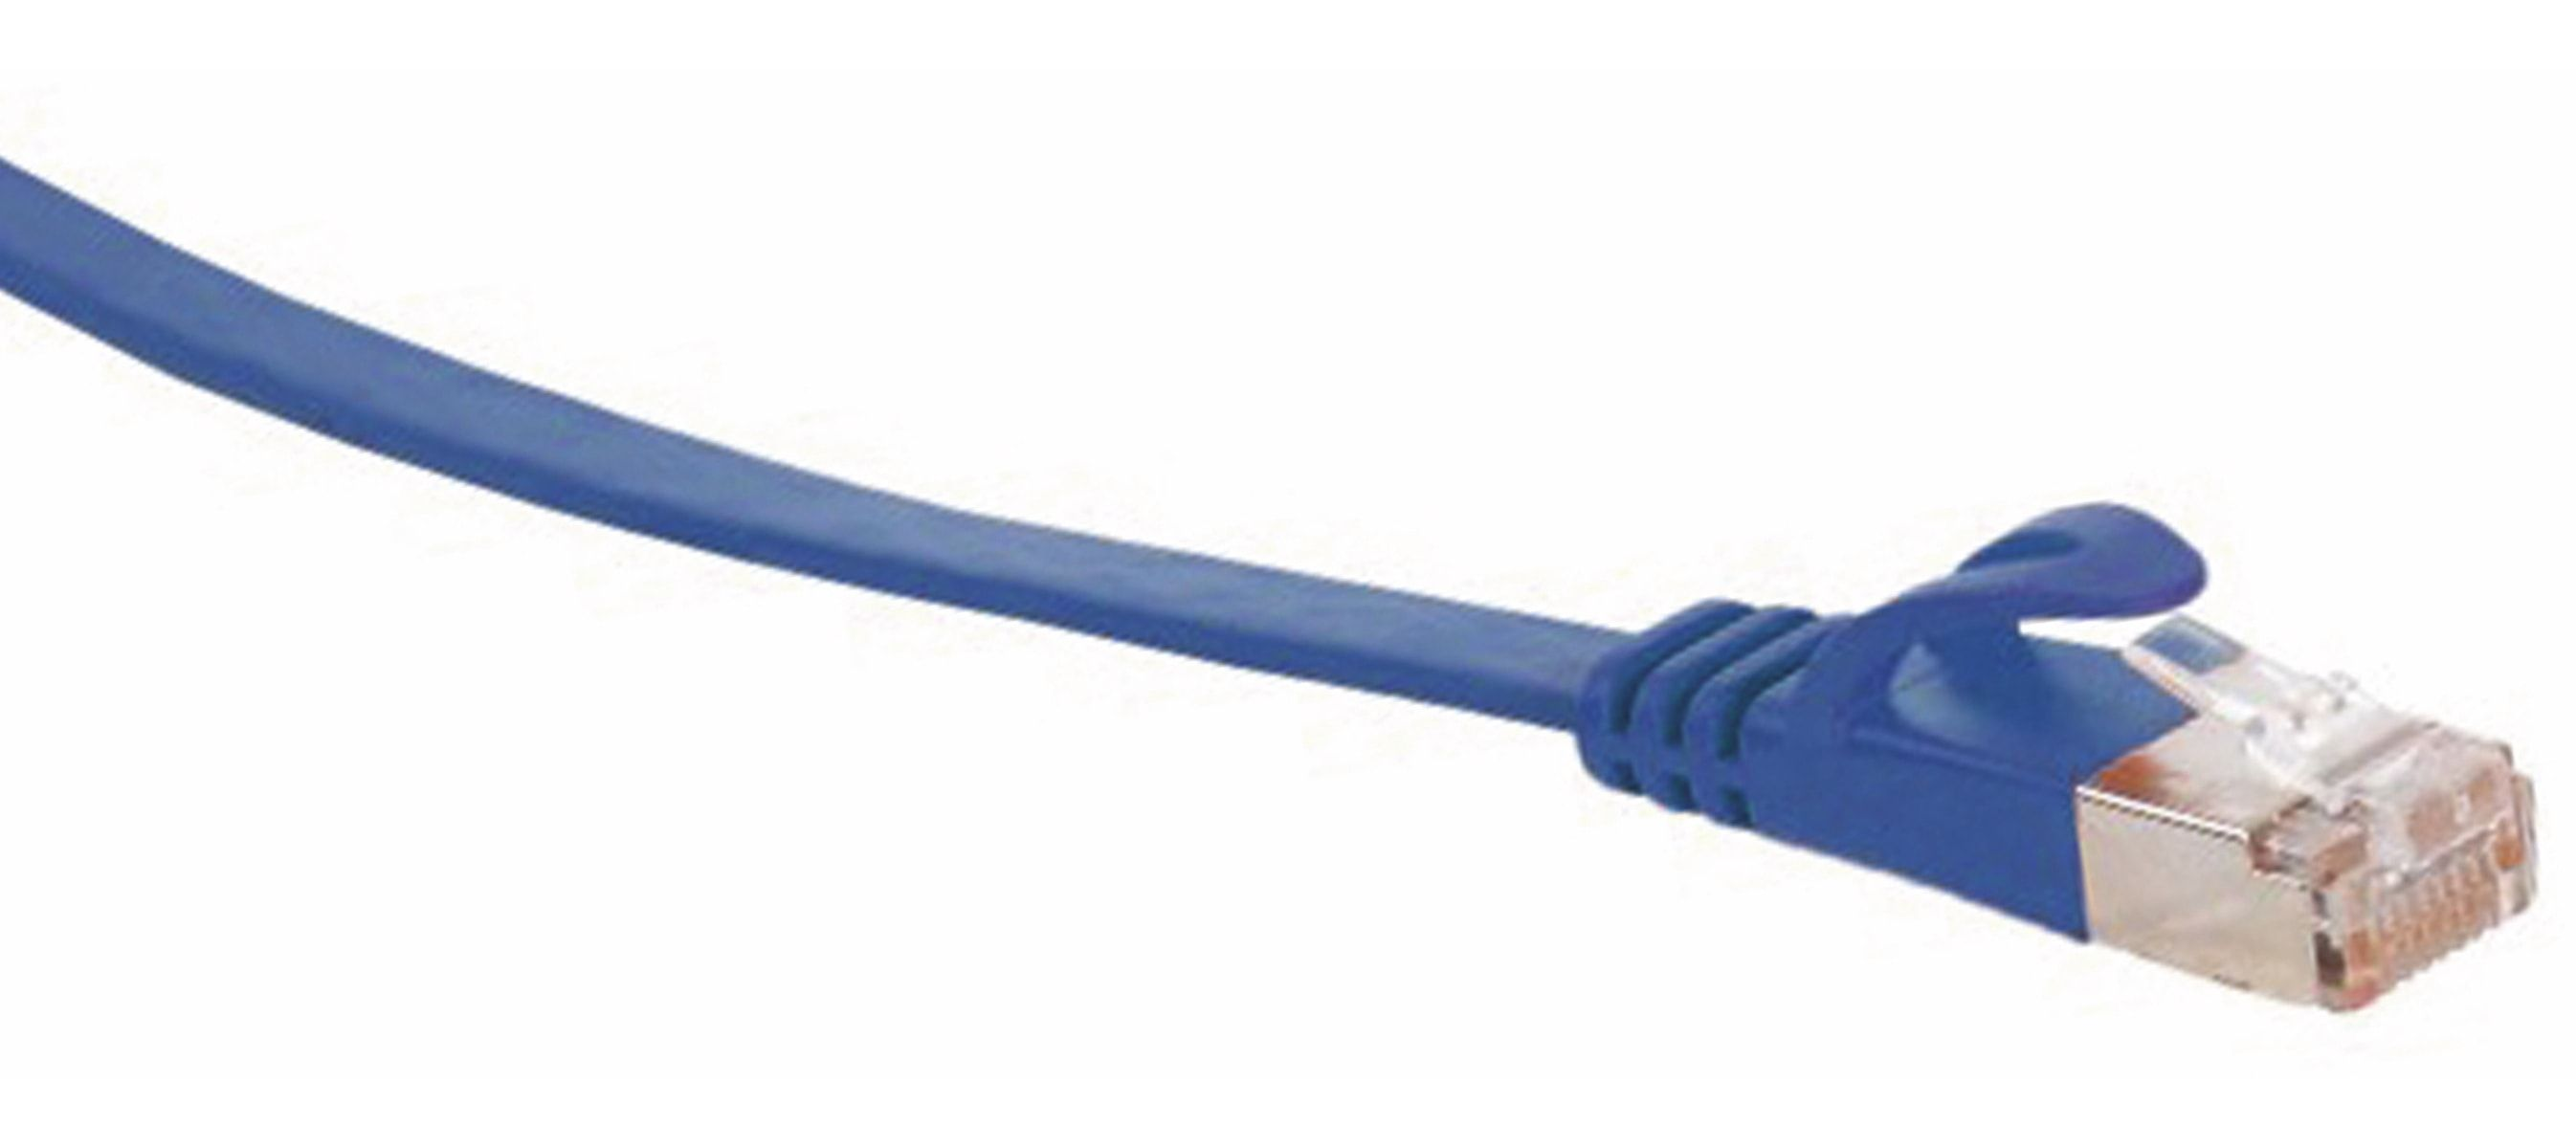 MAXIMUM blau slim S/CONN 7,50 m. 7,5m, RJ45, m 7 RJ45 CONNECTIVITY CAT Flachkabel Rohkabel Patchkabel